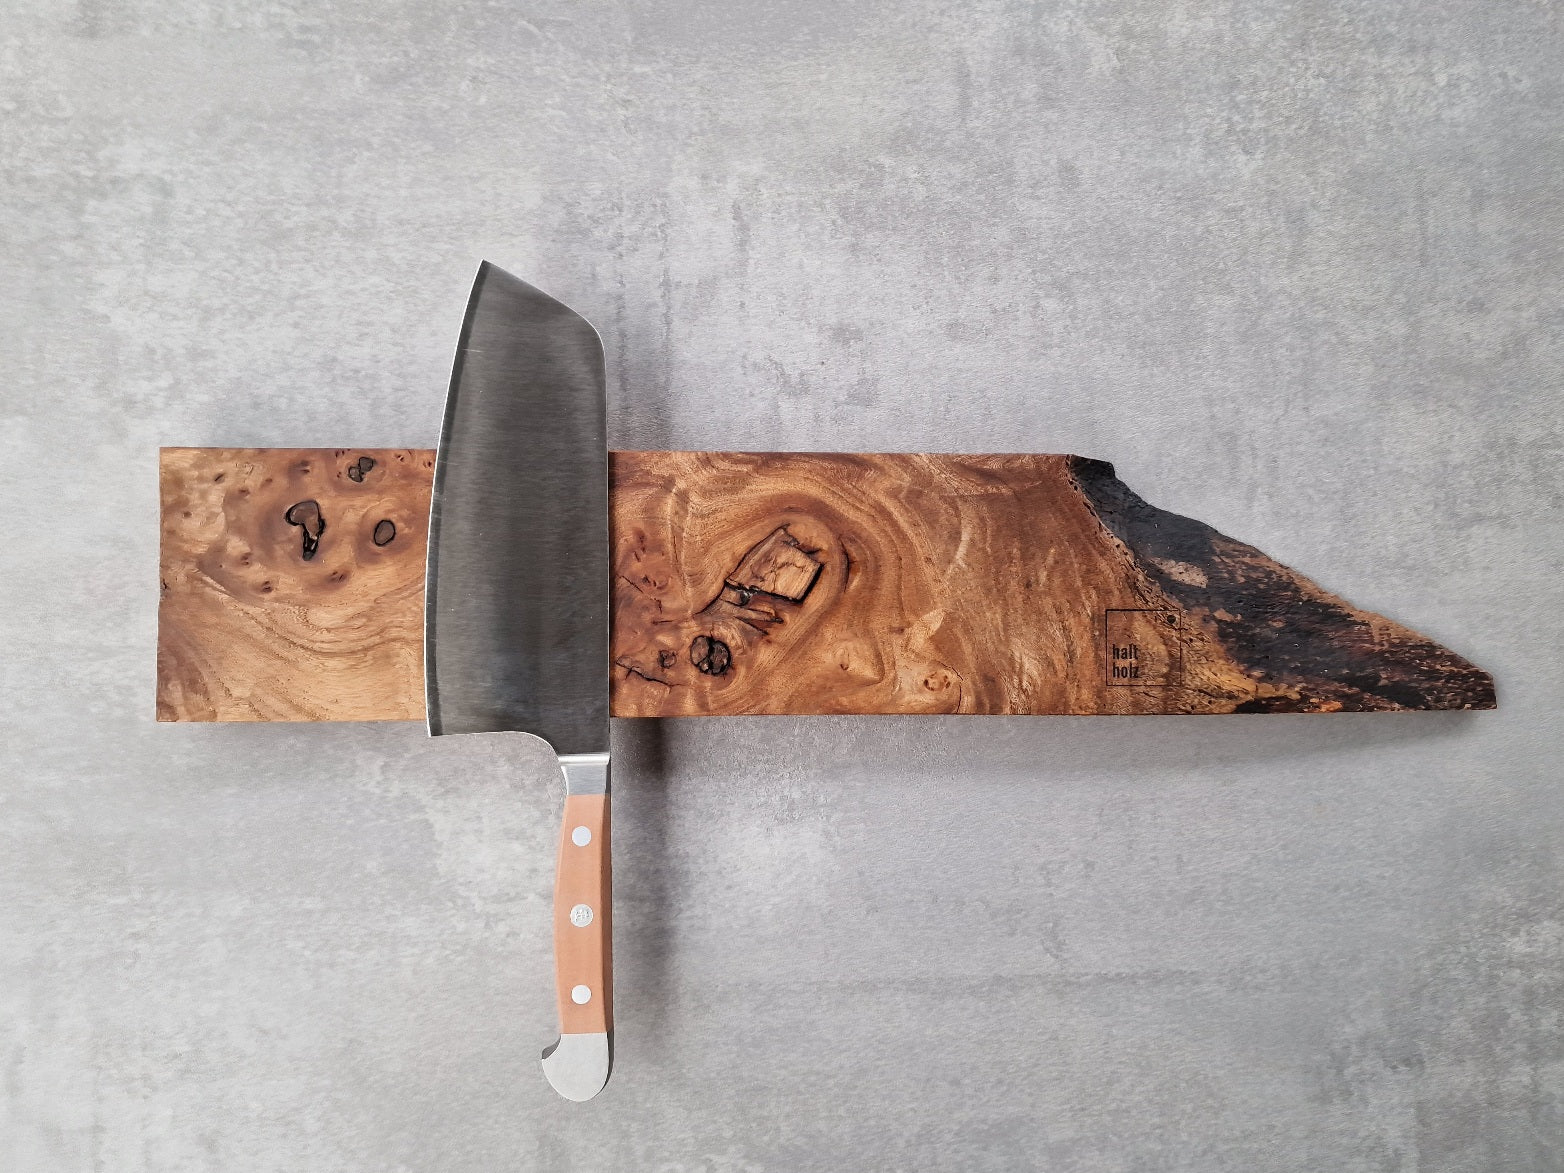 Maserulme Messerleiste, magnetisch für 5 Messer, an einer Betonwand montiert. Mit einem Güde Chin. Kochmesser dekoriert.